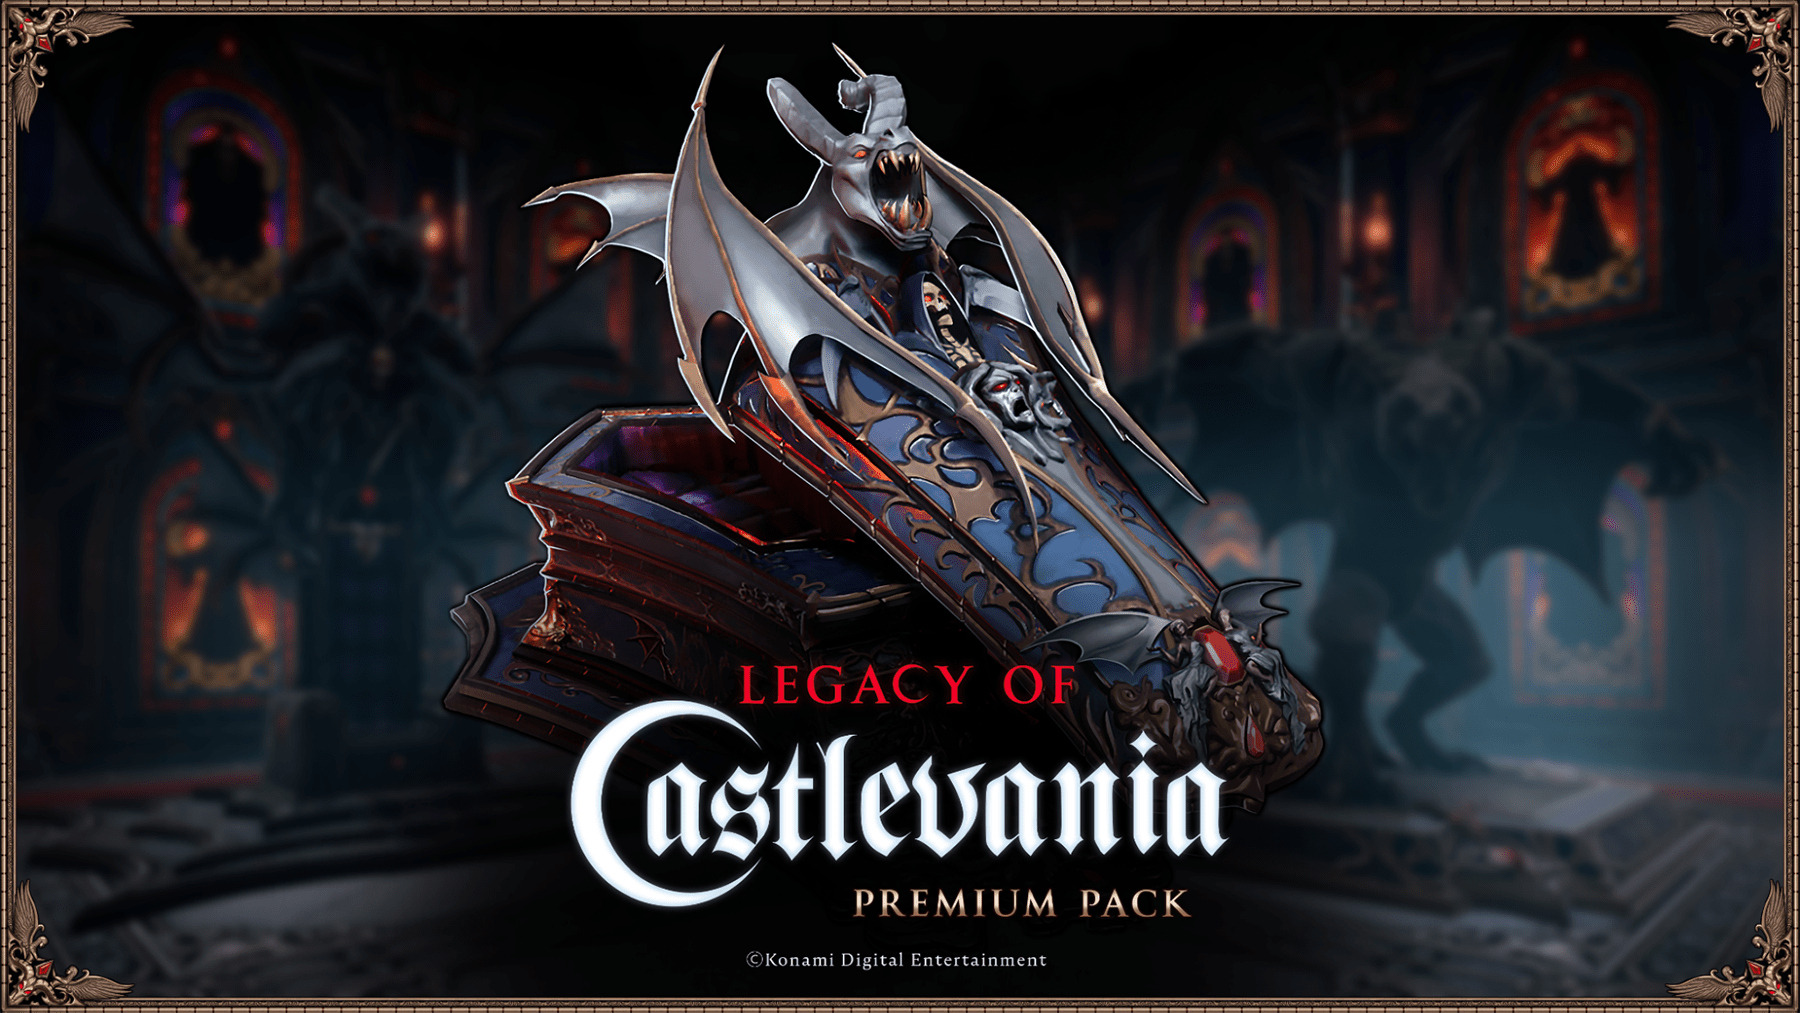 El lanzamiento de la colaboración V Rising - Legacy of Castlevania tendrá lugar el 8 de mayo